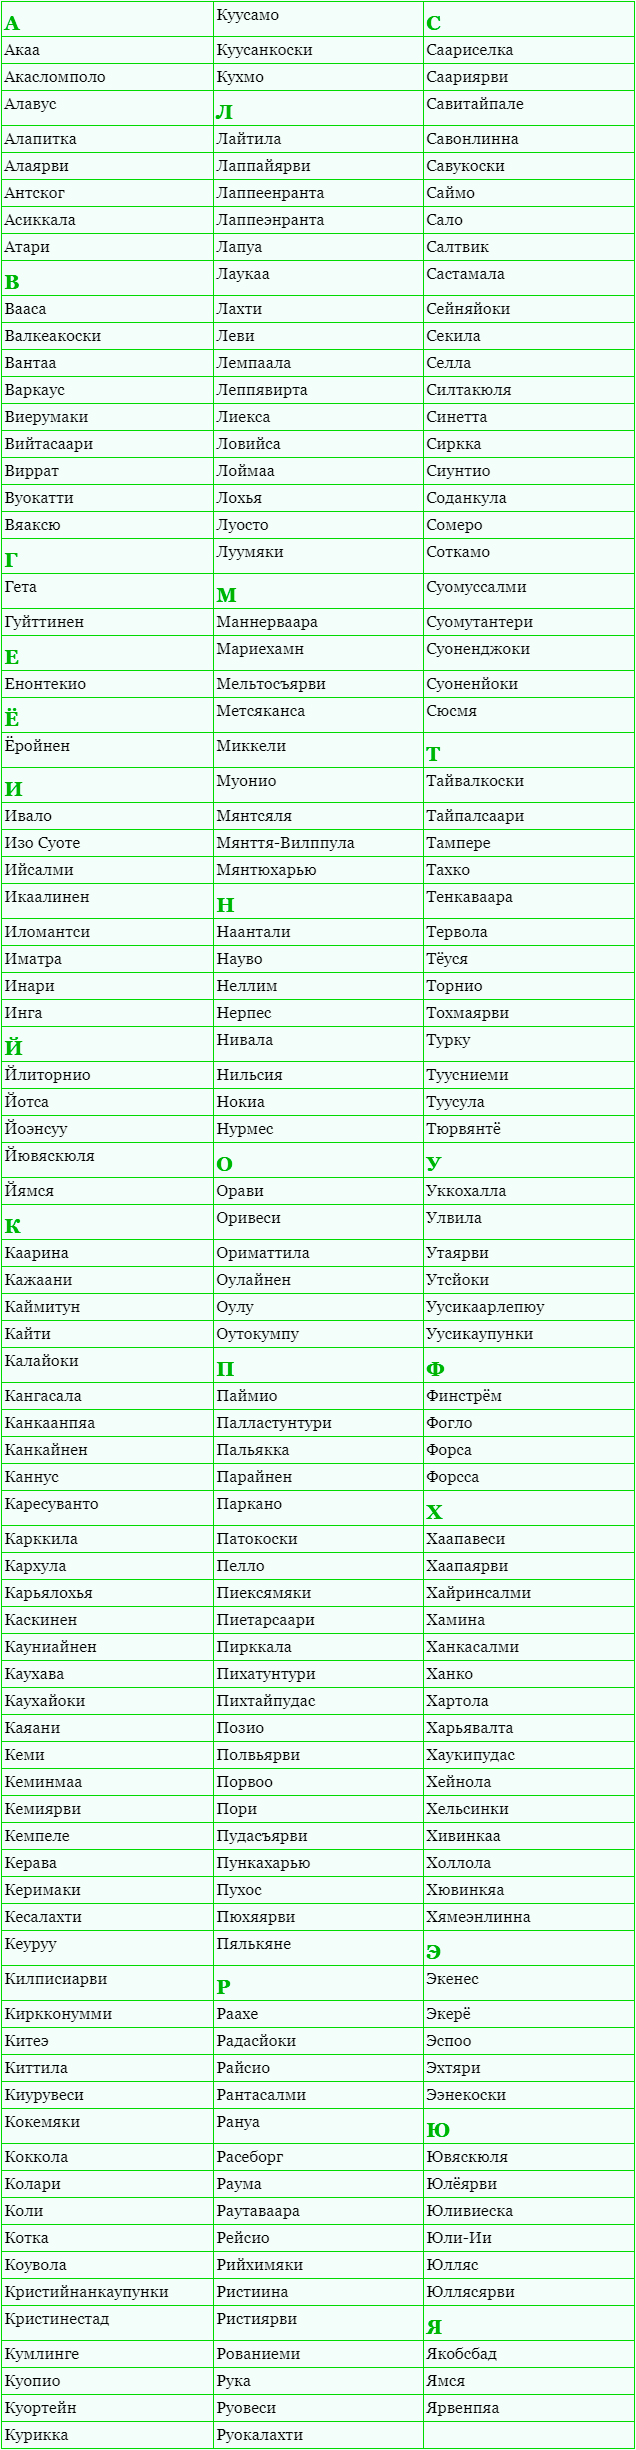 Список финских городов по алфавиту